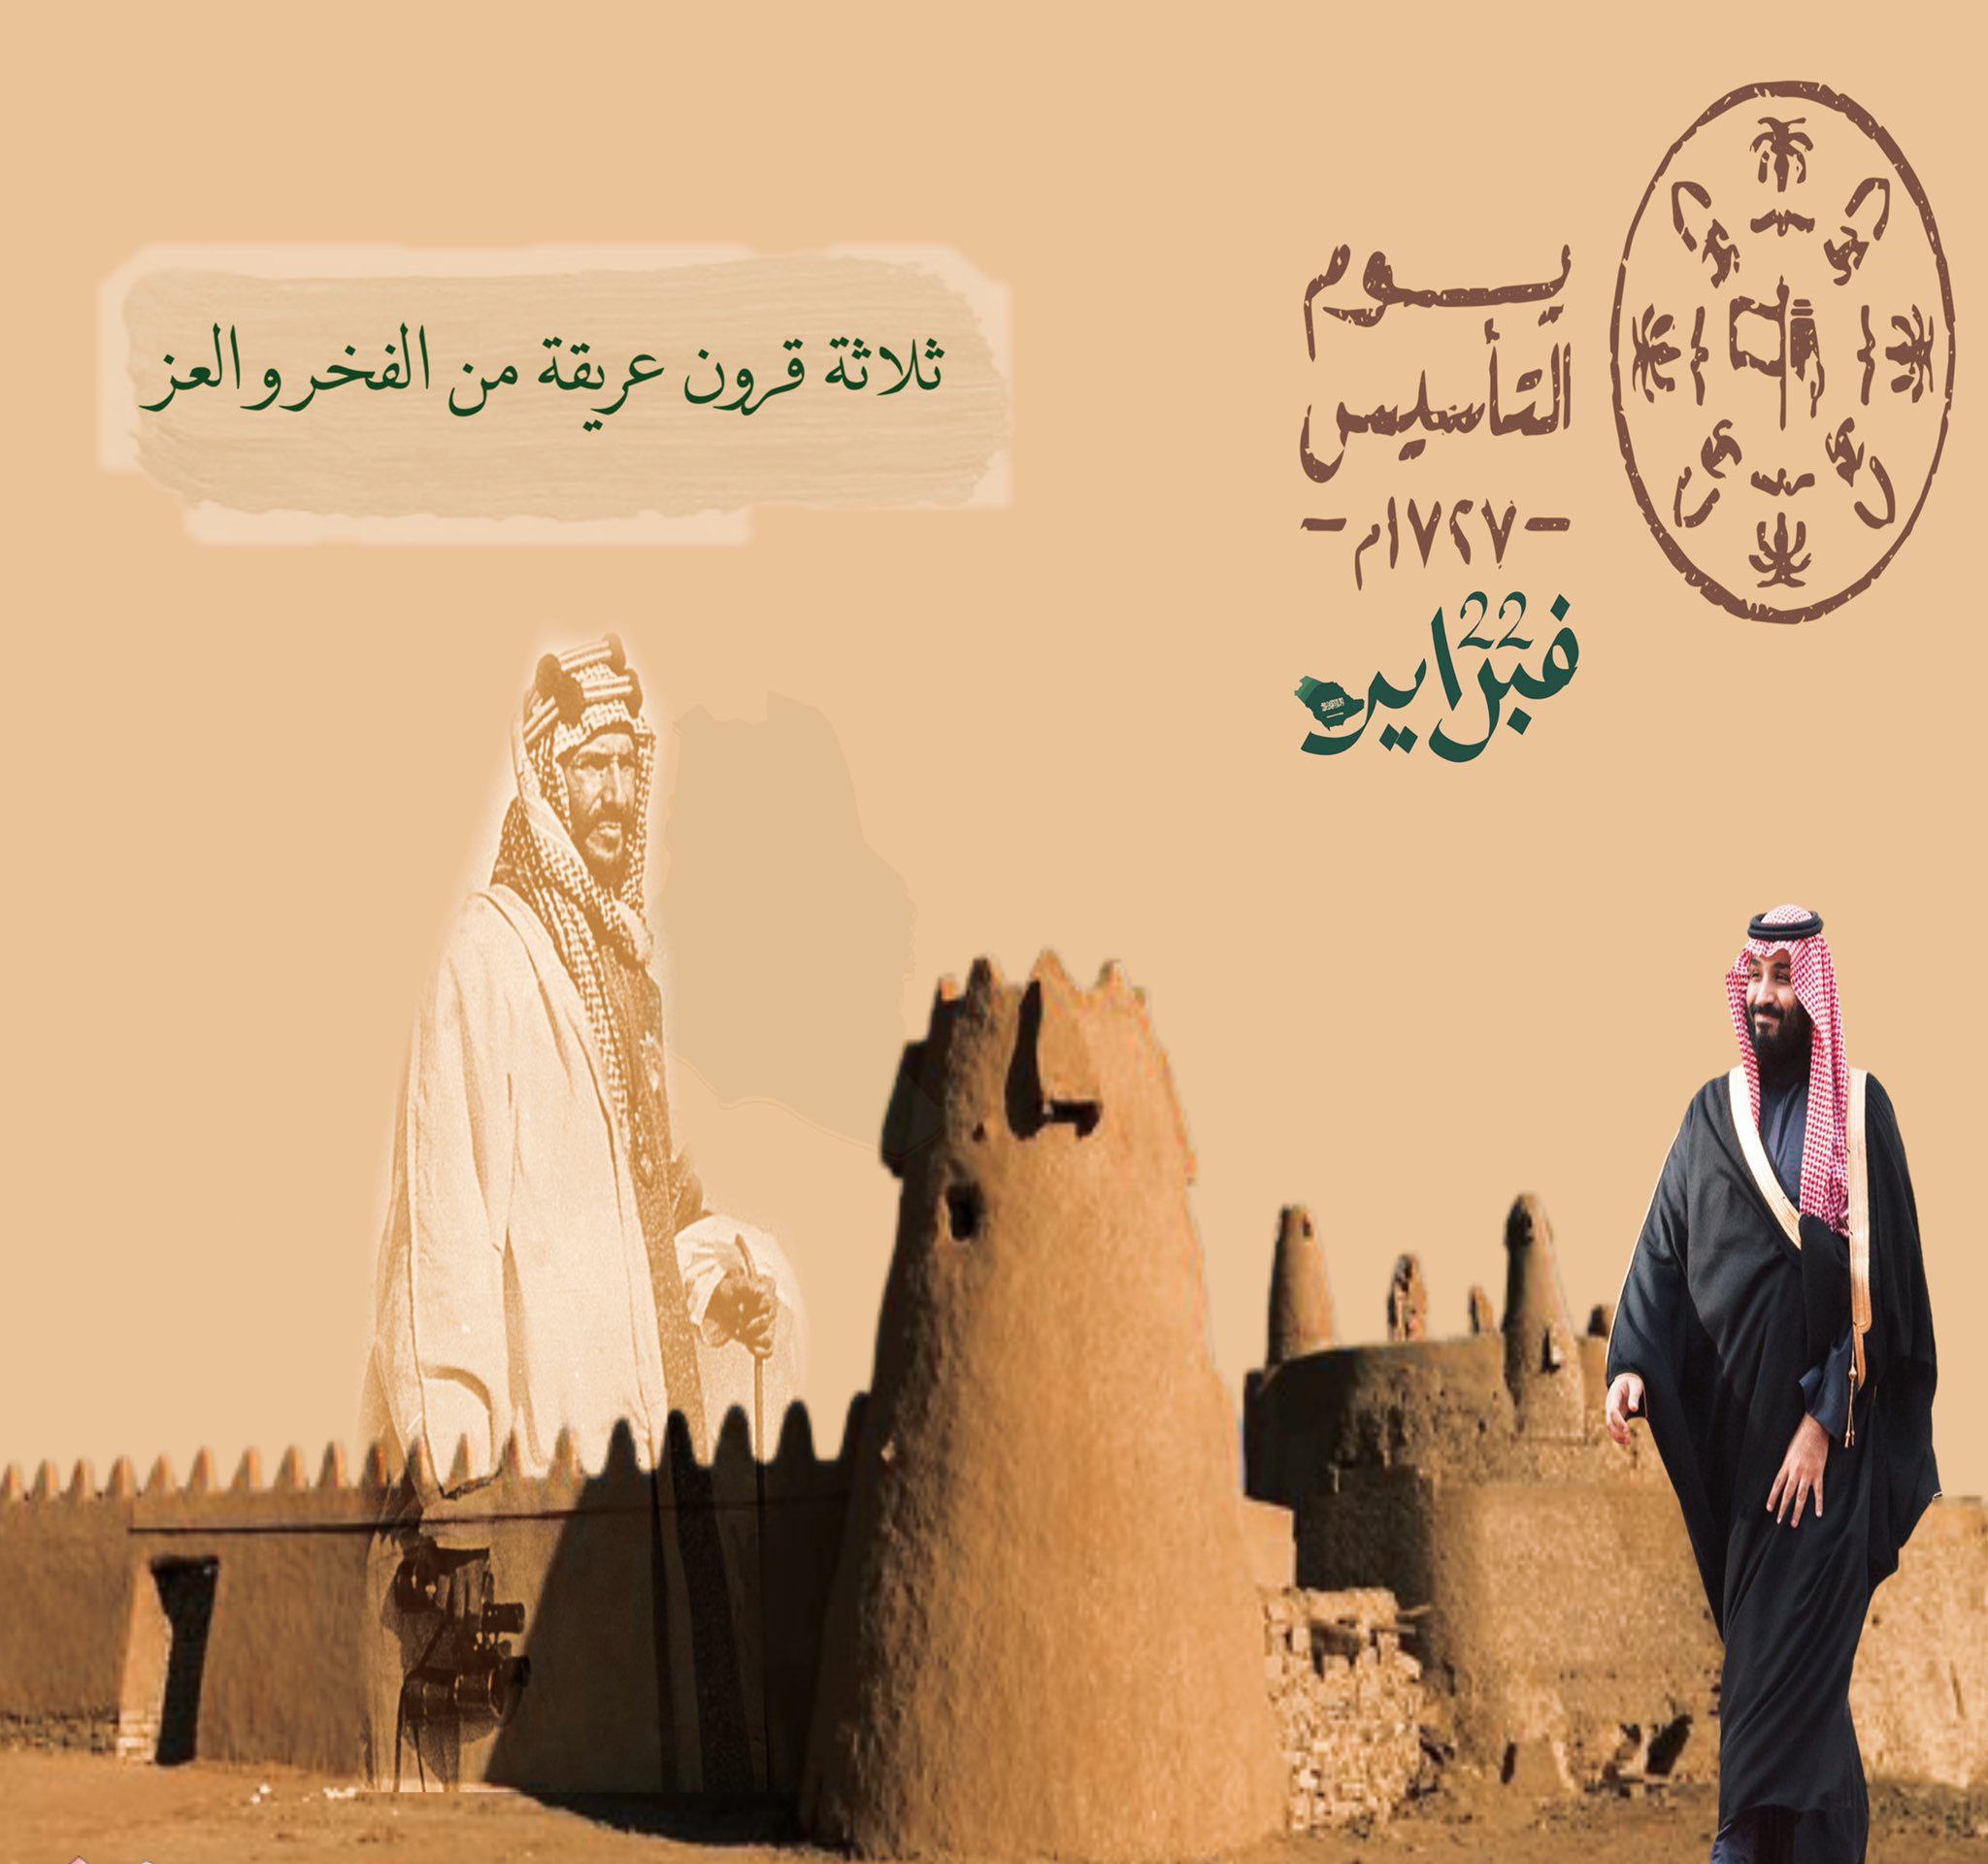 اجمل عبارات عن يوم التأسيس السعودي 1444-2023 للاحتفال بذكرى ثلاث قرون لدولة عظيمة.